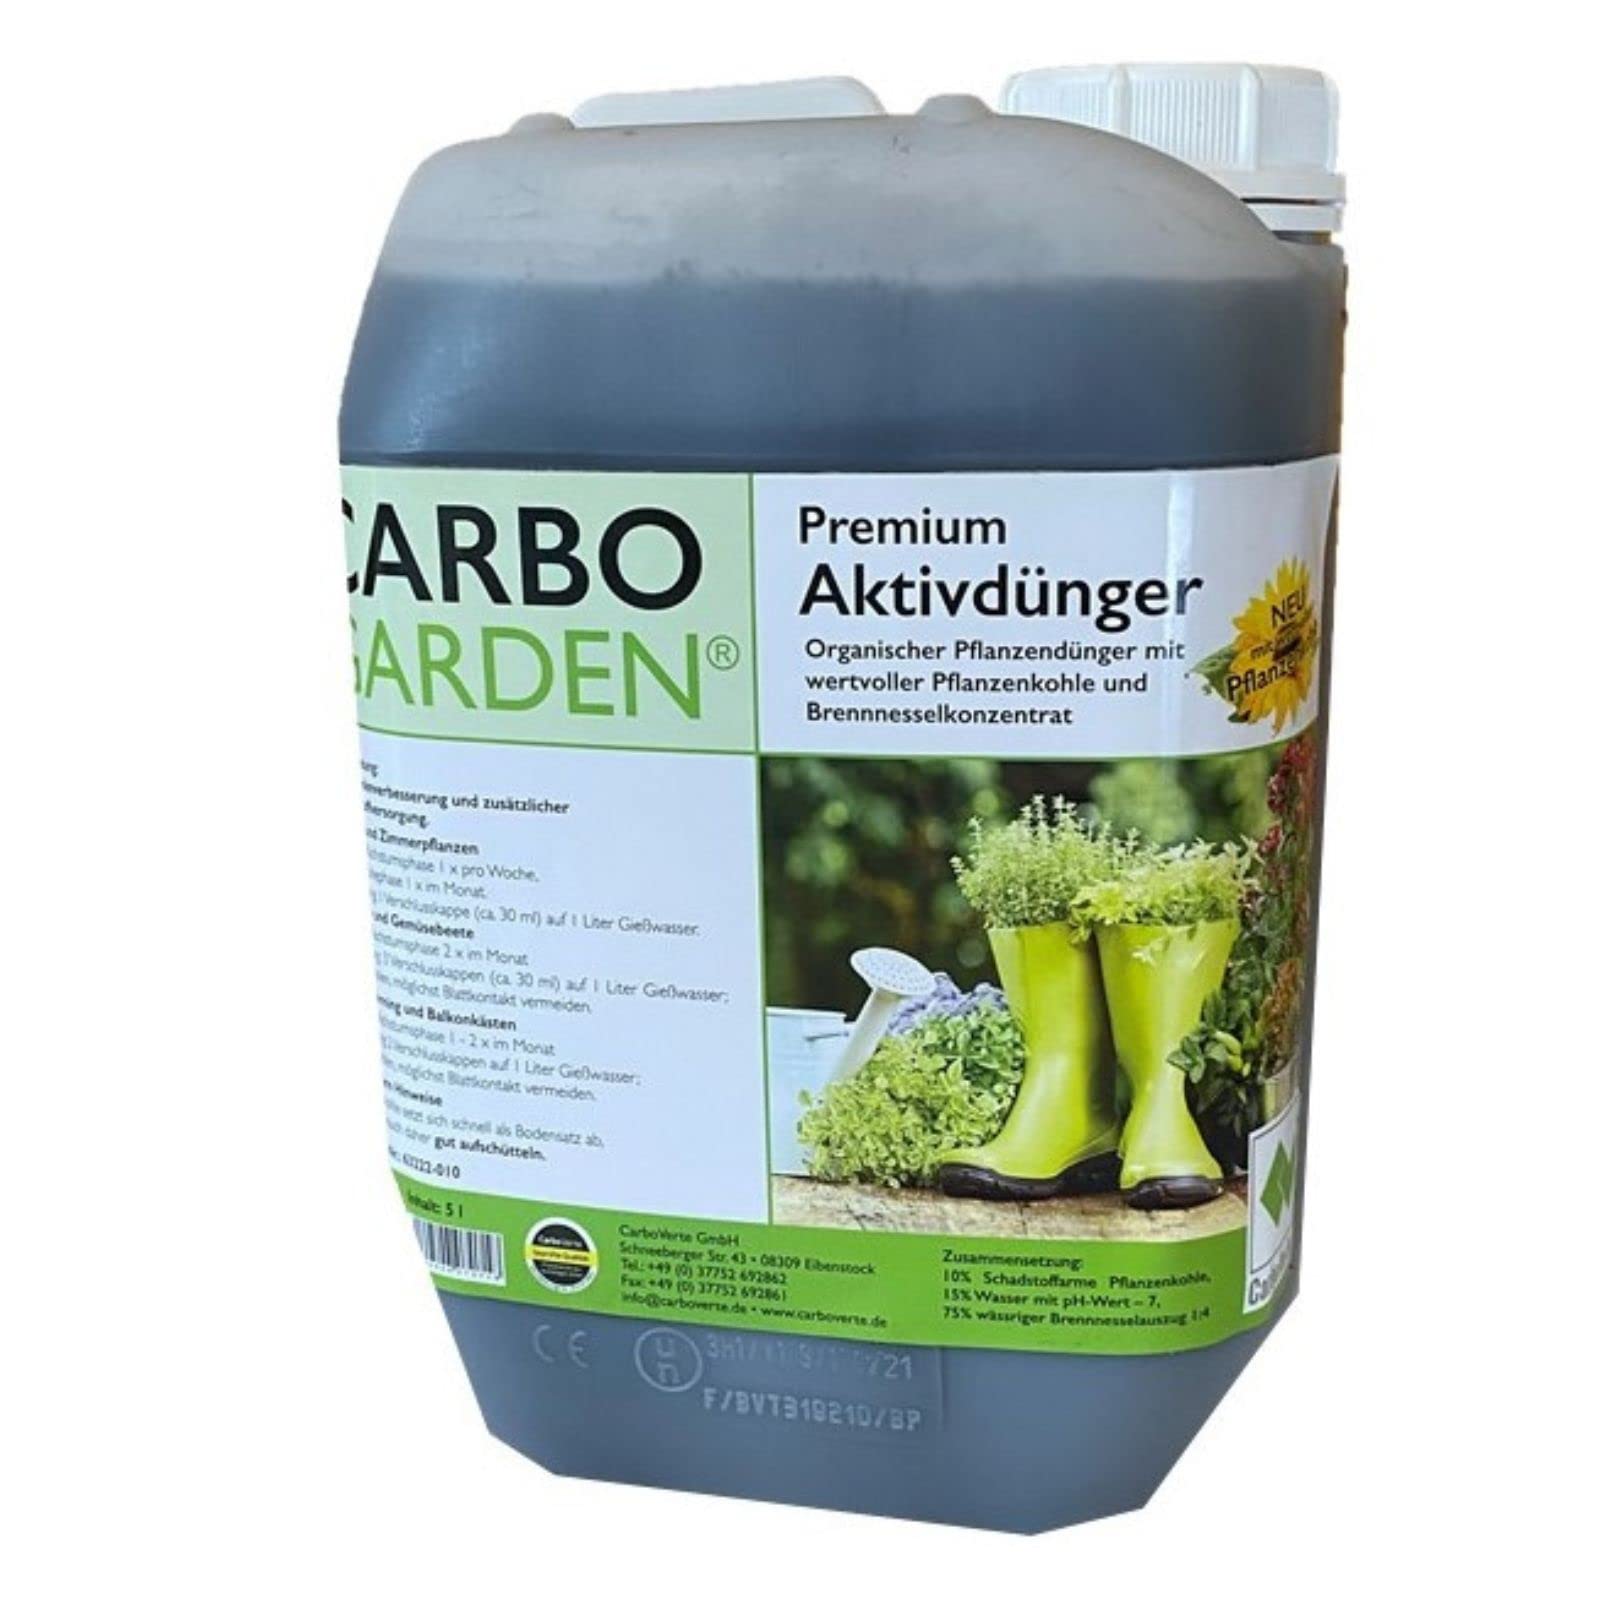 Aktivdünger, flüssig, 5 Liter Kanister, mit natürlichen Brennesselkonzentrat und wertvoller Premium Pflanzenkohle für alle Blüh- und Grünpflanzen